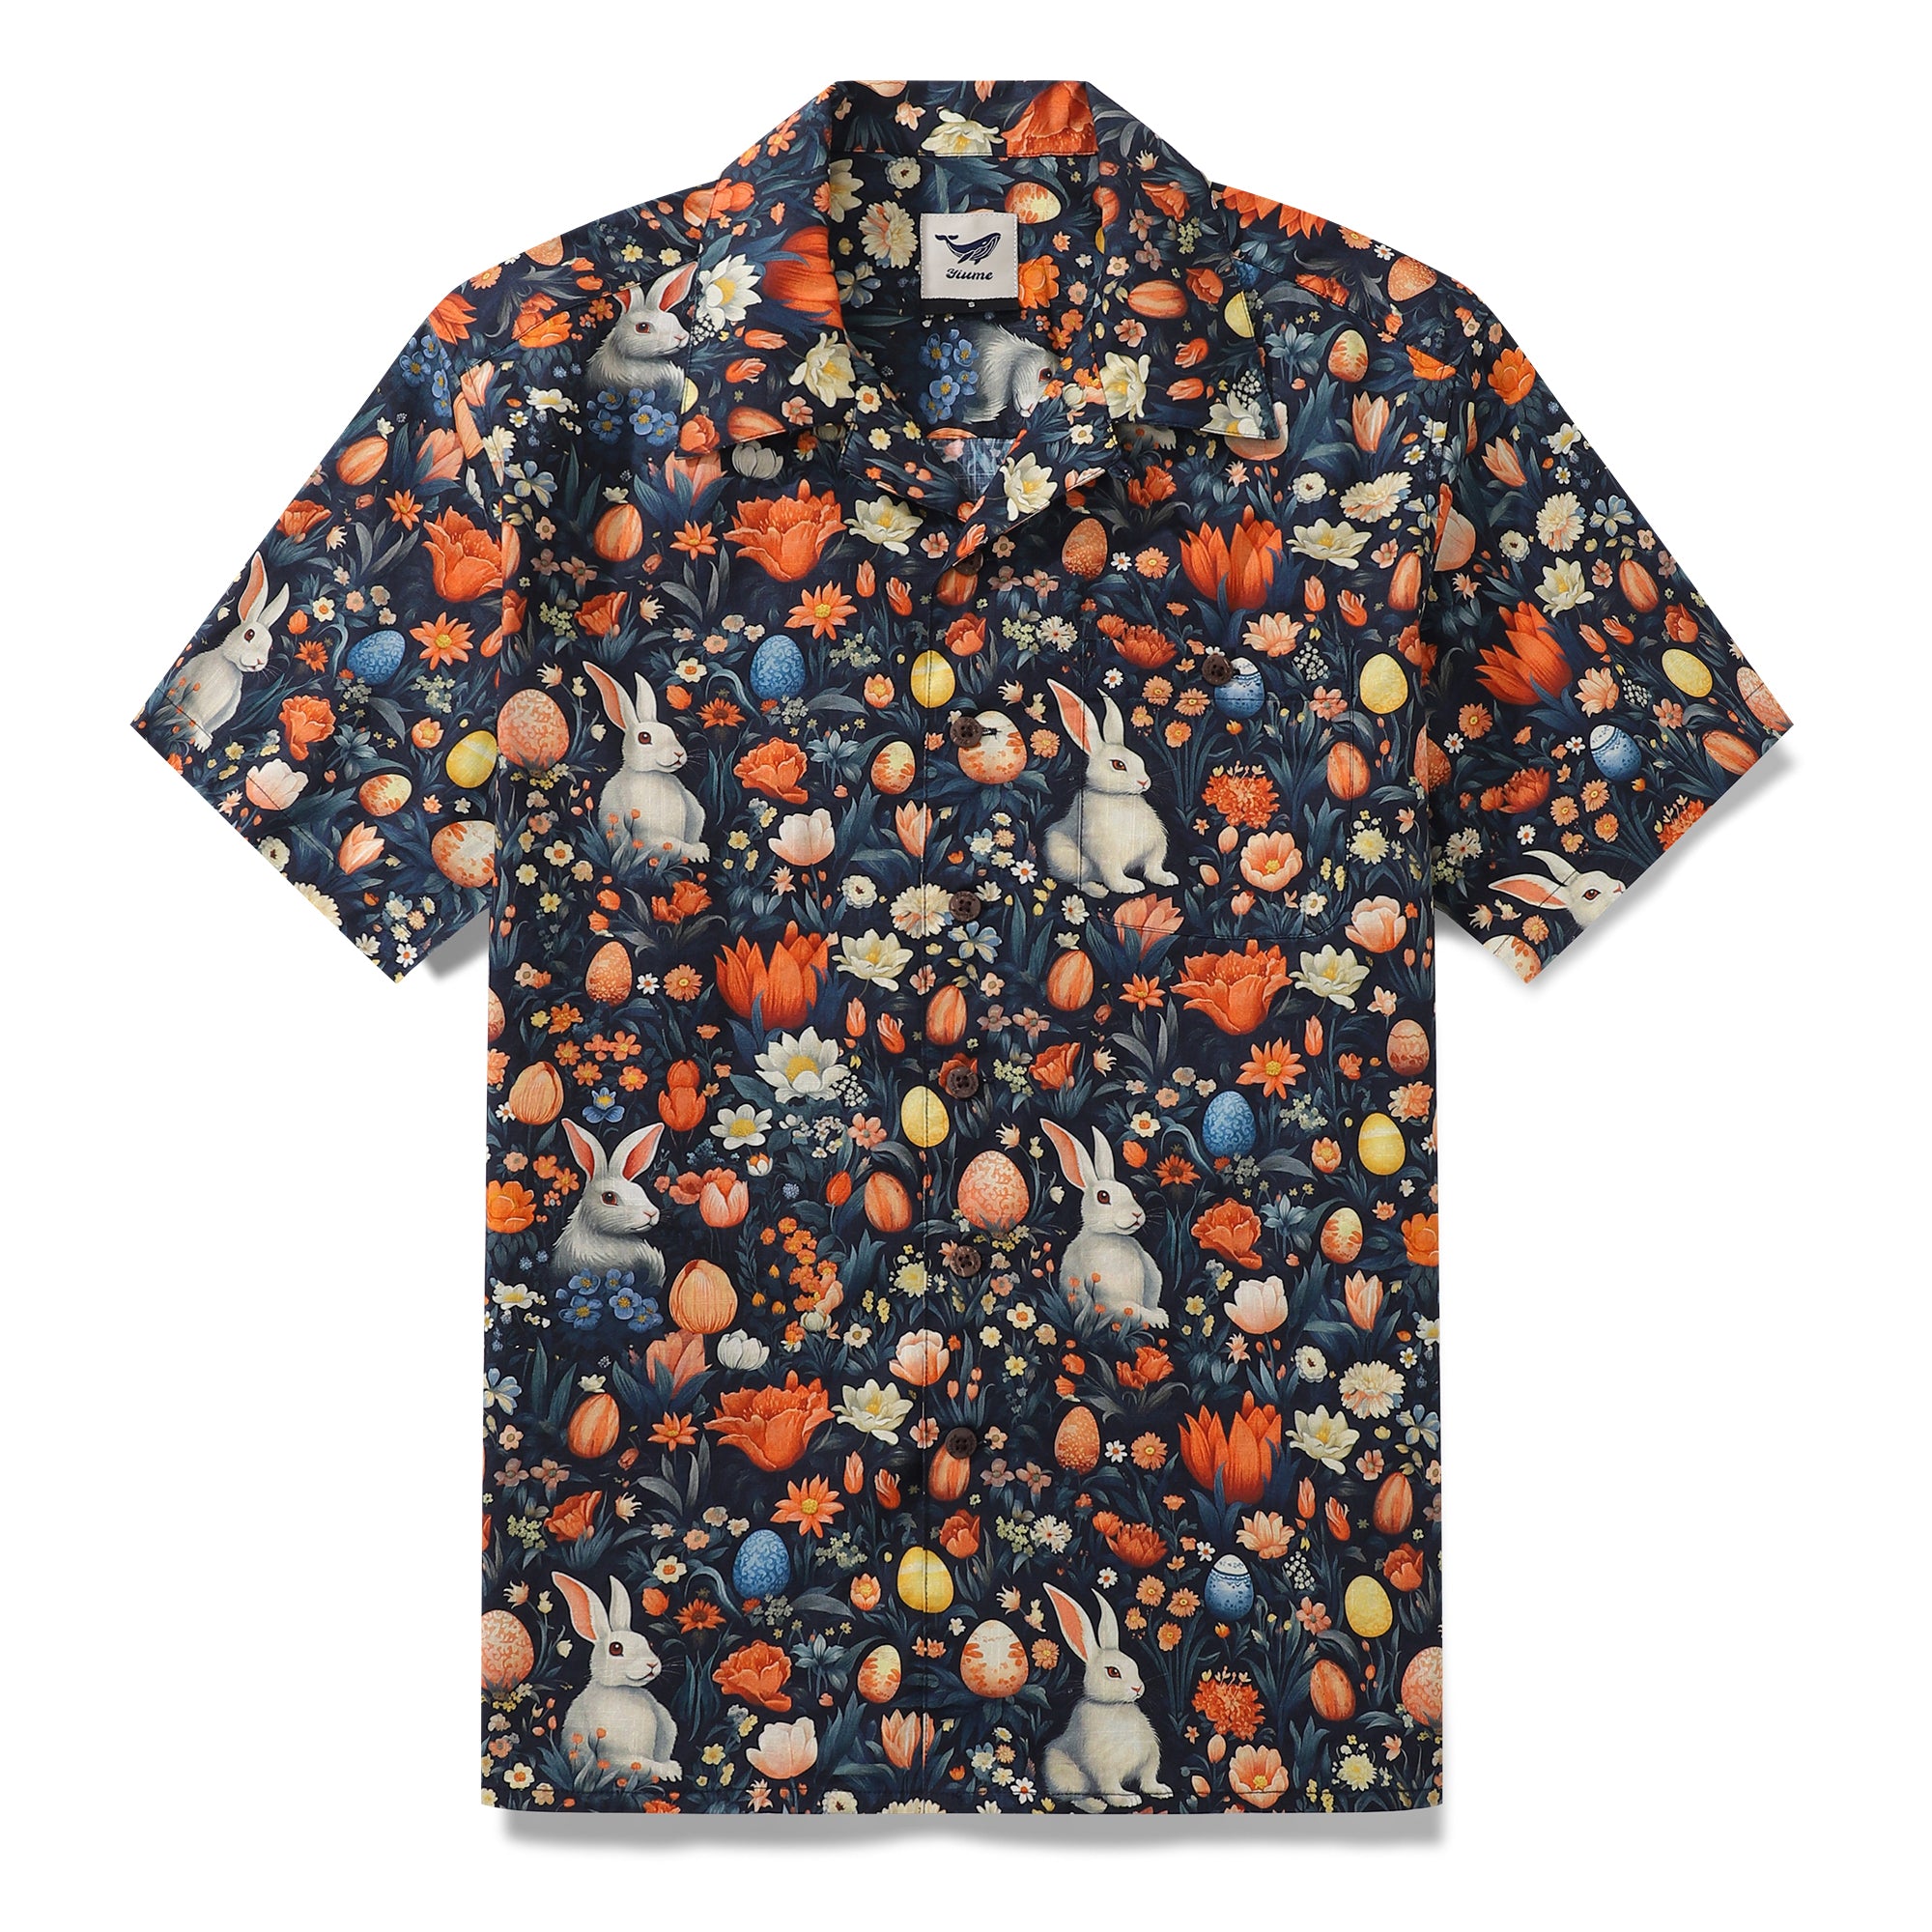 Hawaiian Shirt For Men New Life Shirt Camp Collar 100% Cotton